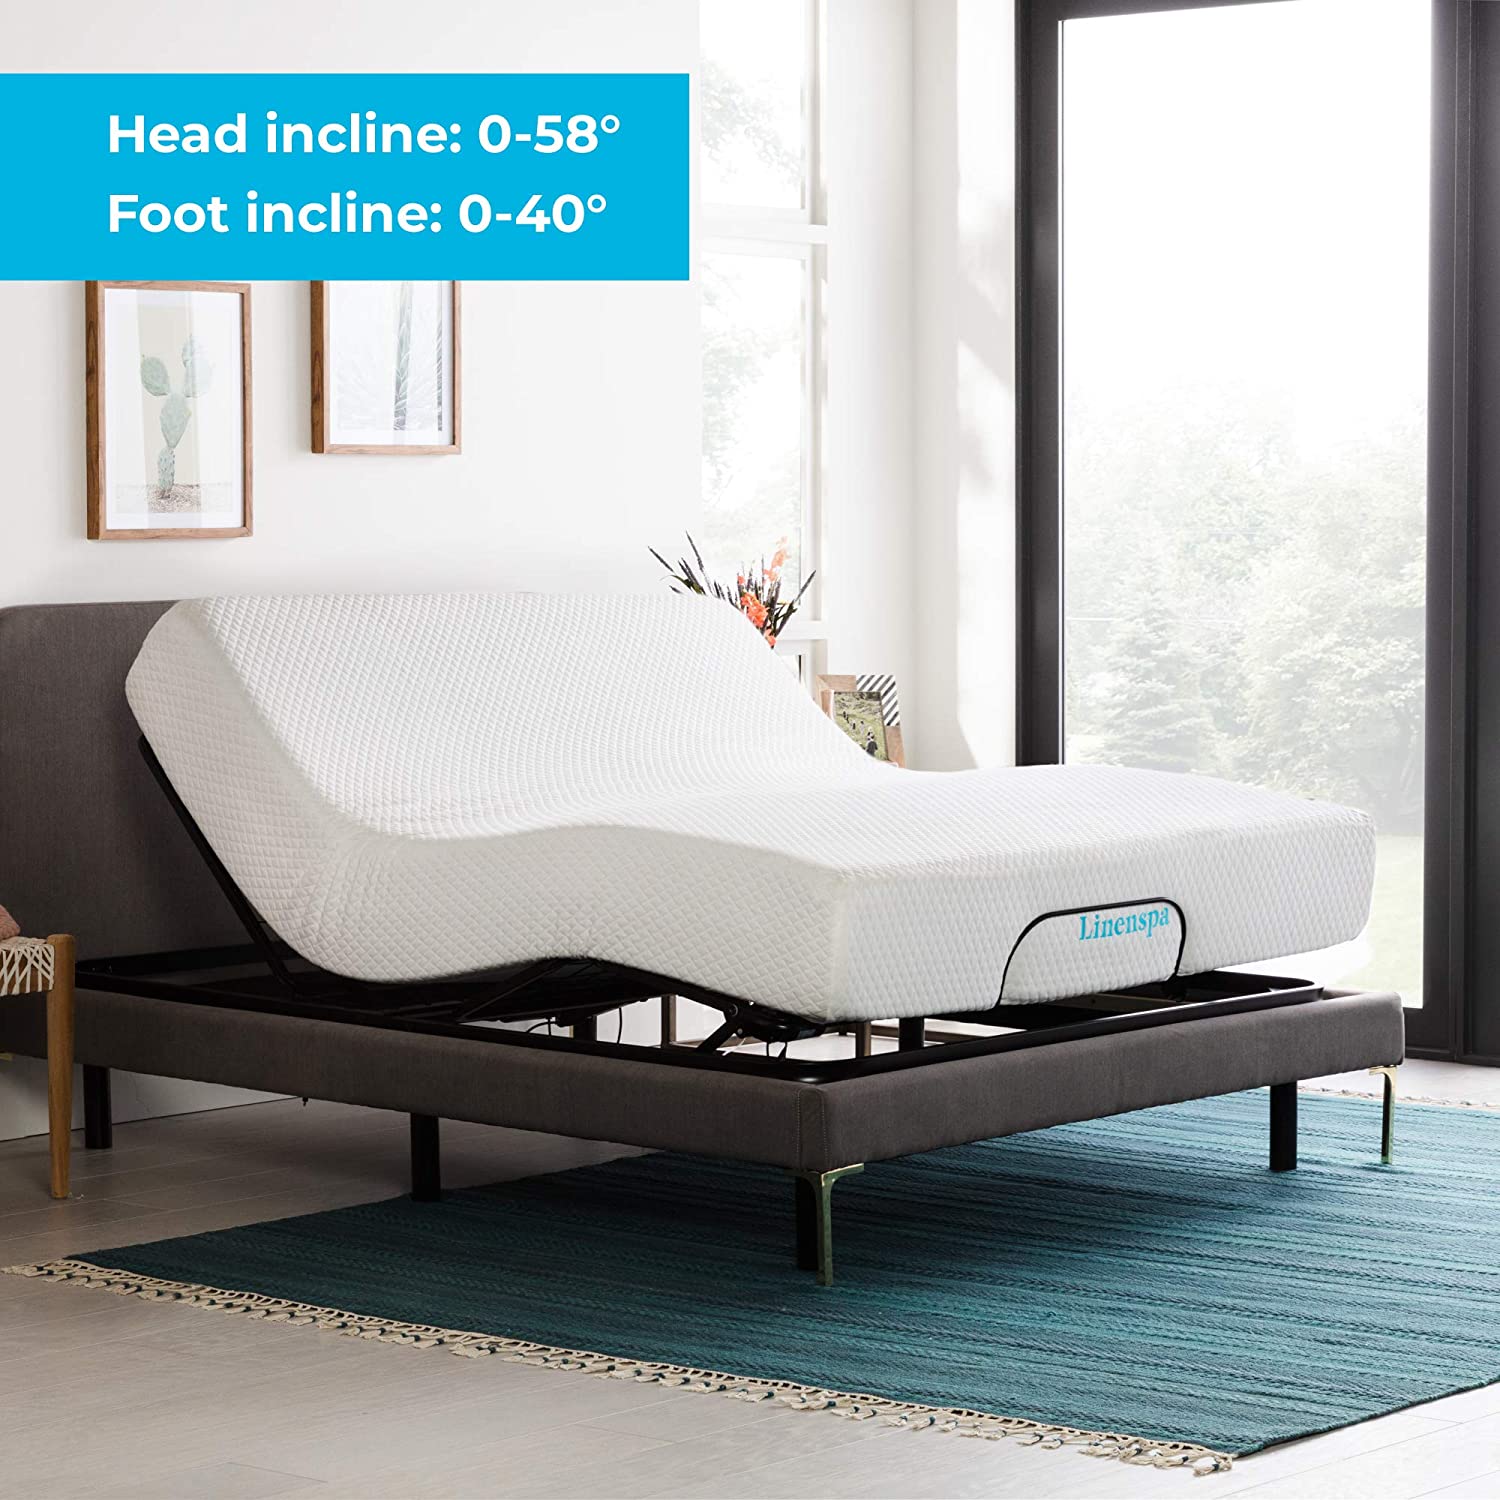 Best Adjustable Beds for Seniors: Image of the LINENSPA Adjustable Bed Base 